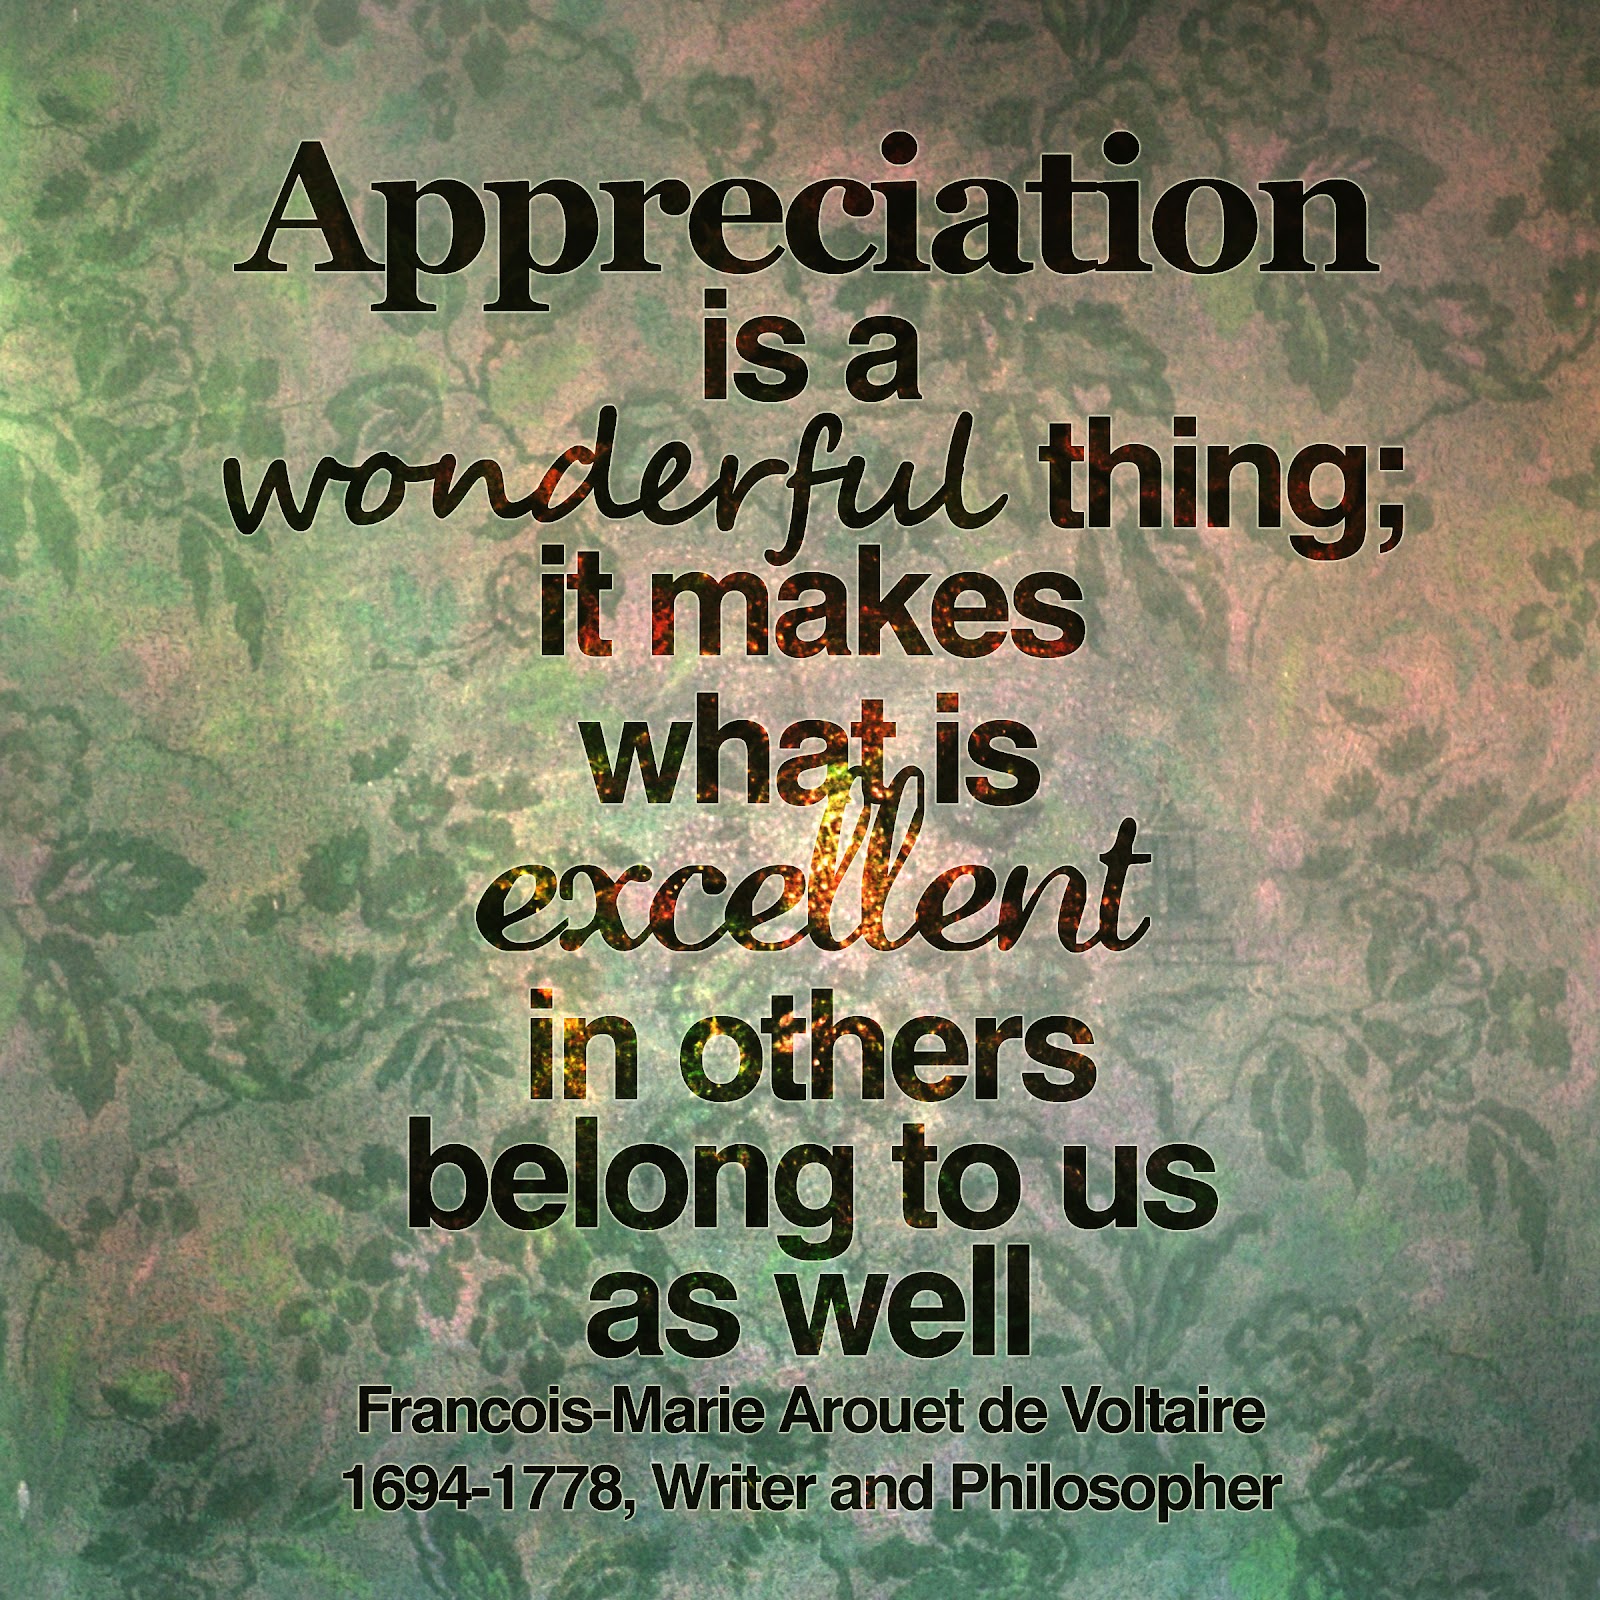 Appreciation+is+a+wonderful+thing+copy.jpg